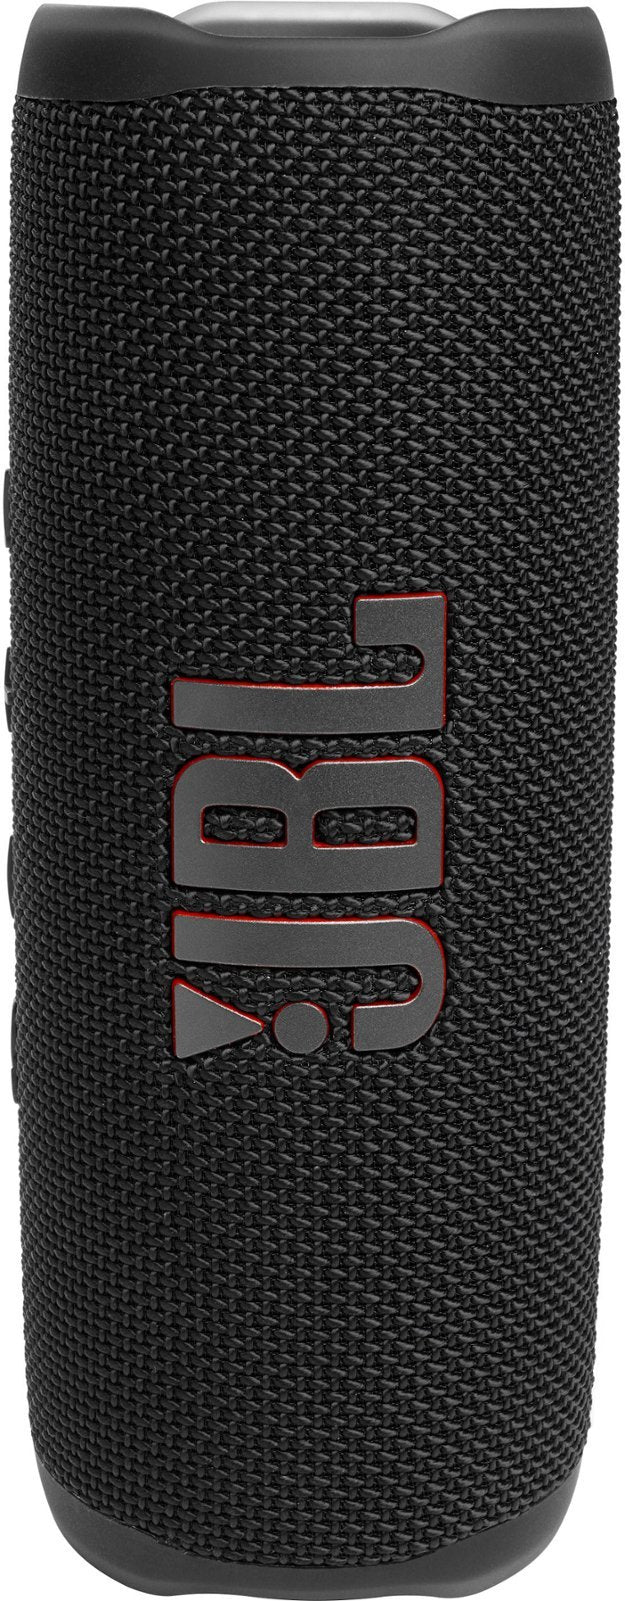 JBL FLIP 6 Portable IP67 Waterproof Wireless Bluetooth Speaker - GT - Black (Refurbished)